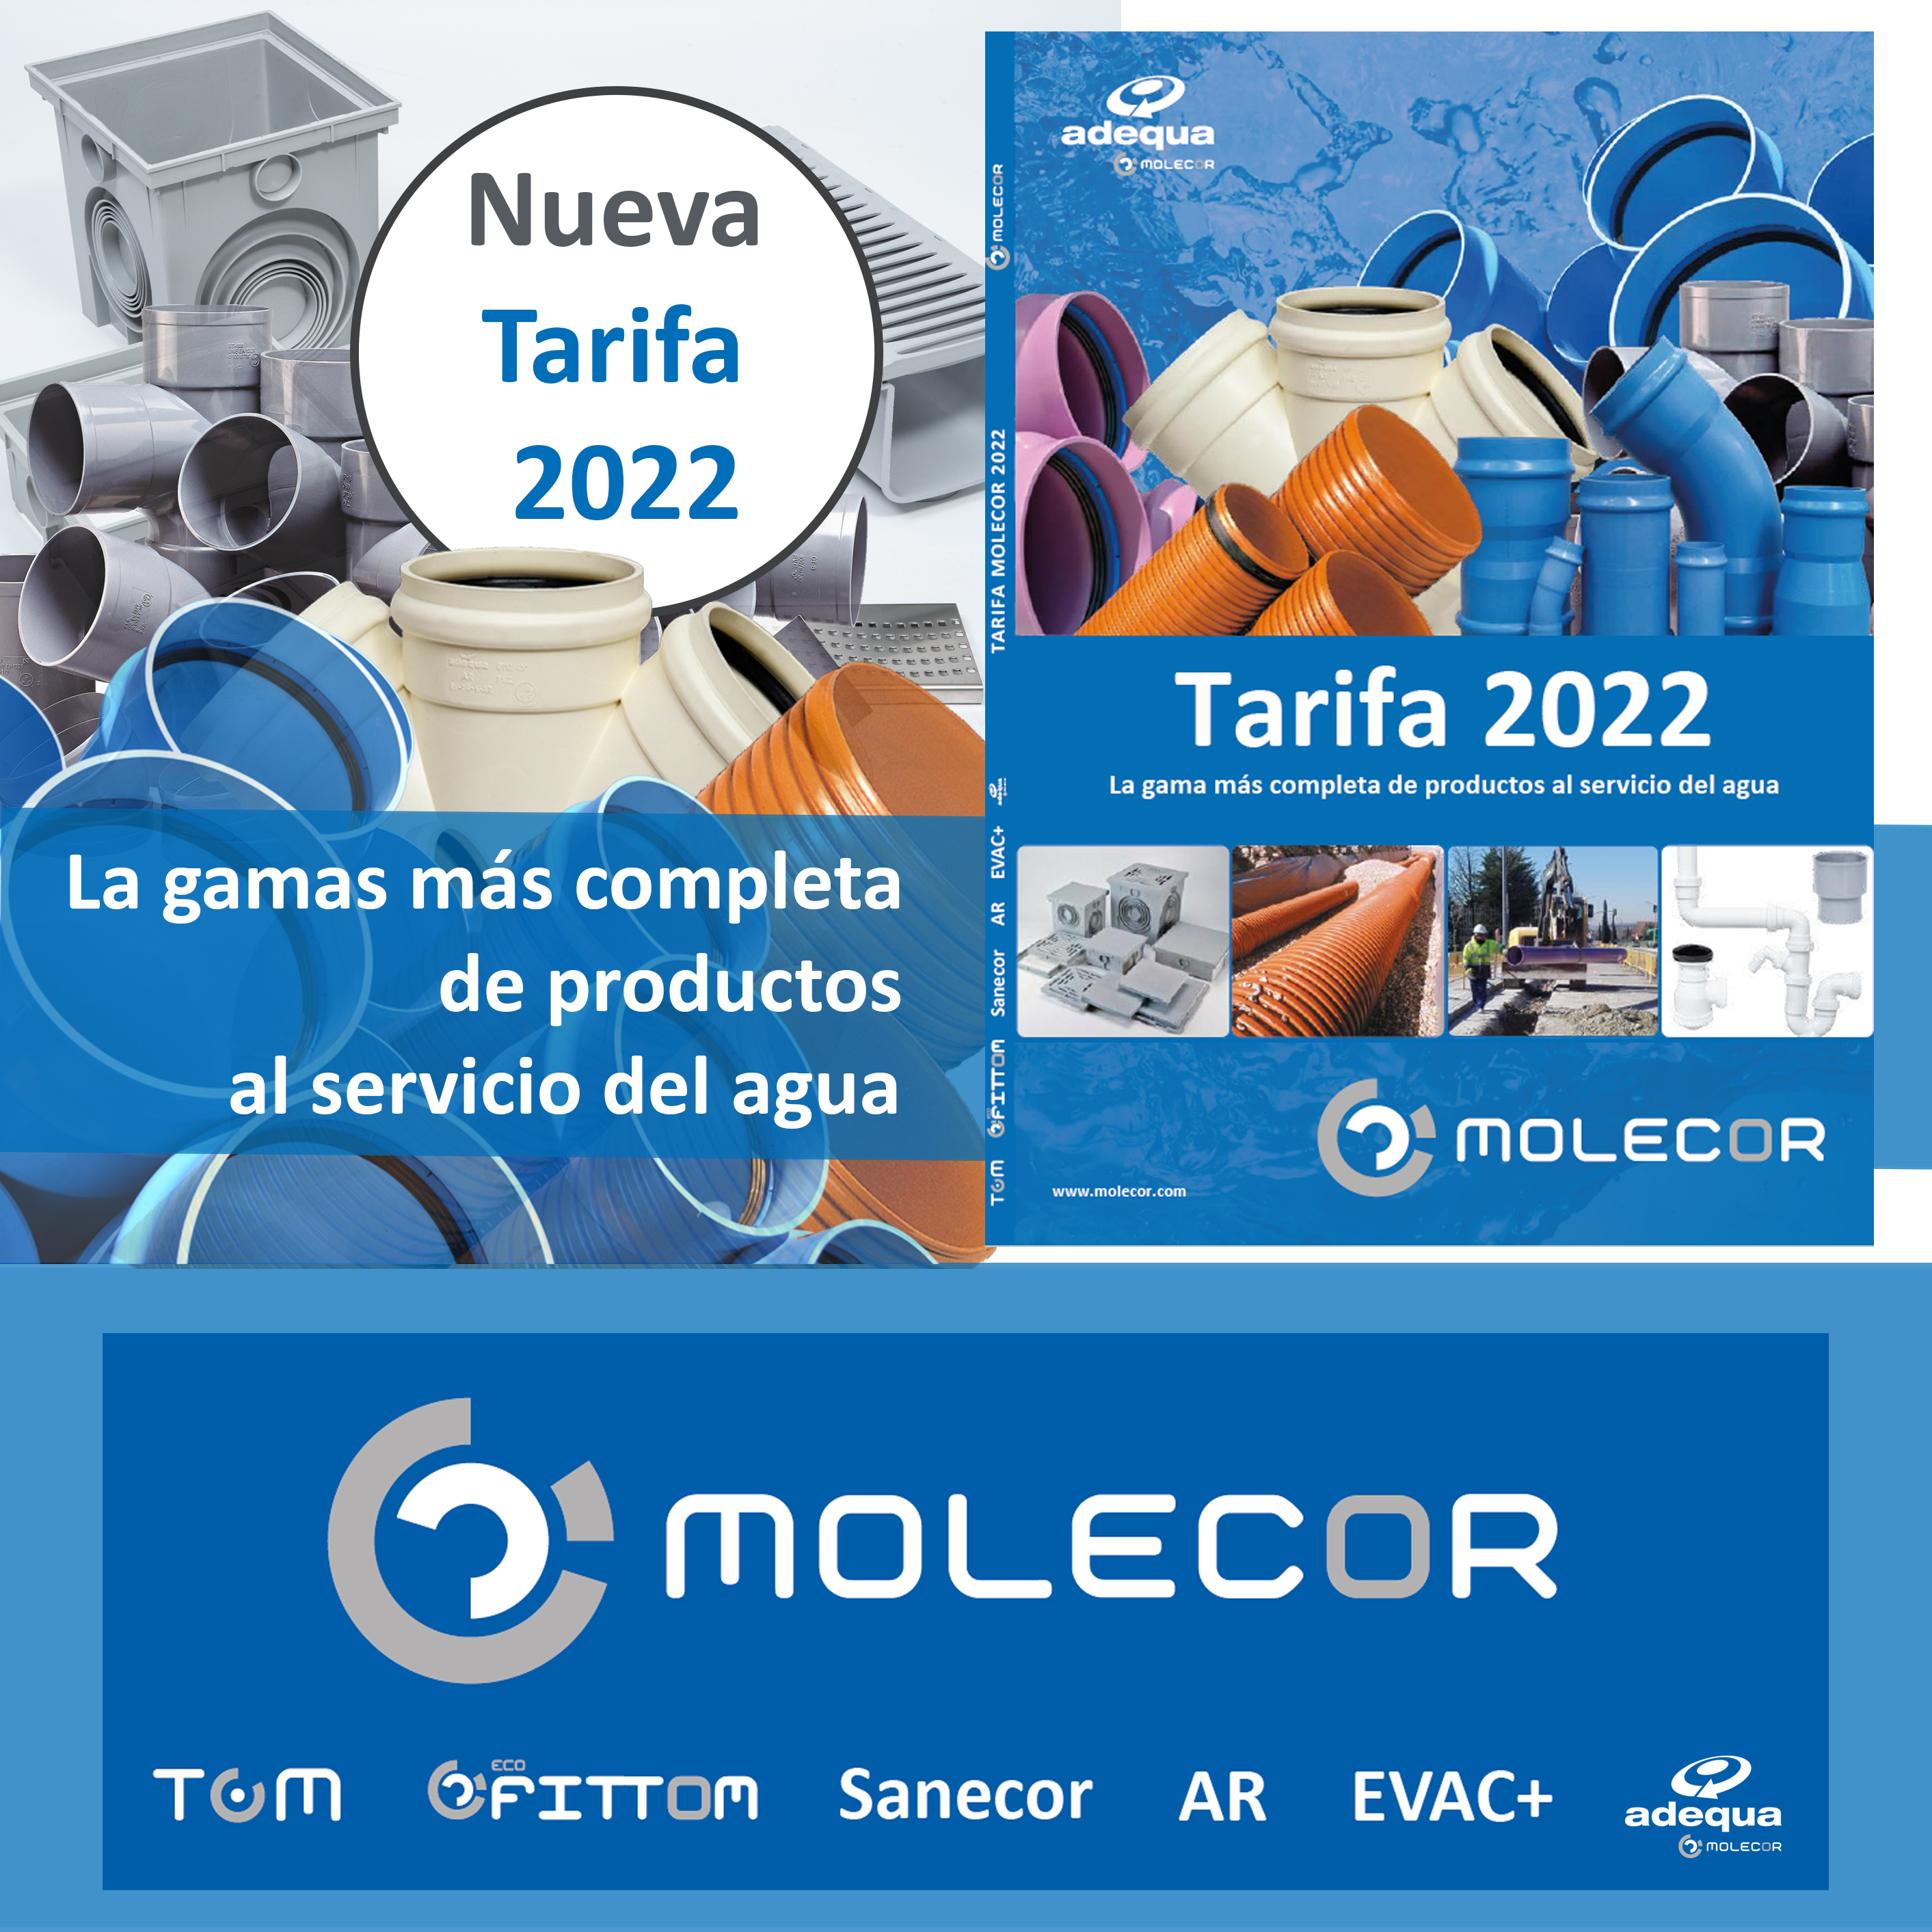 Tarifa 2022 de Molecor La gama más completa de productos al servicio del agua